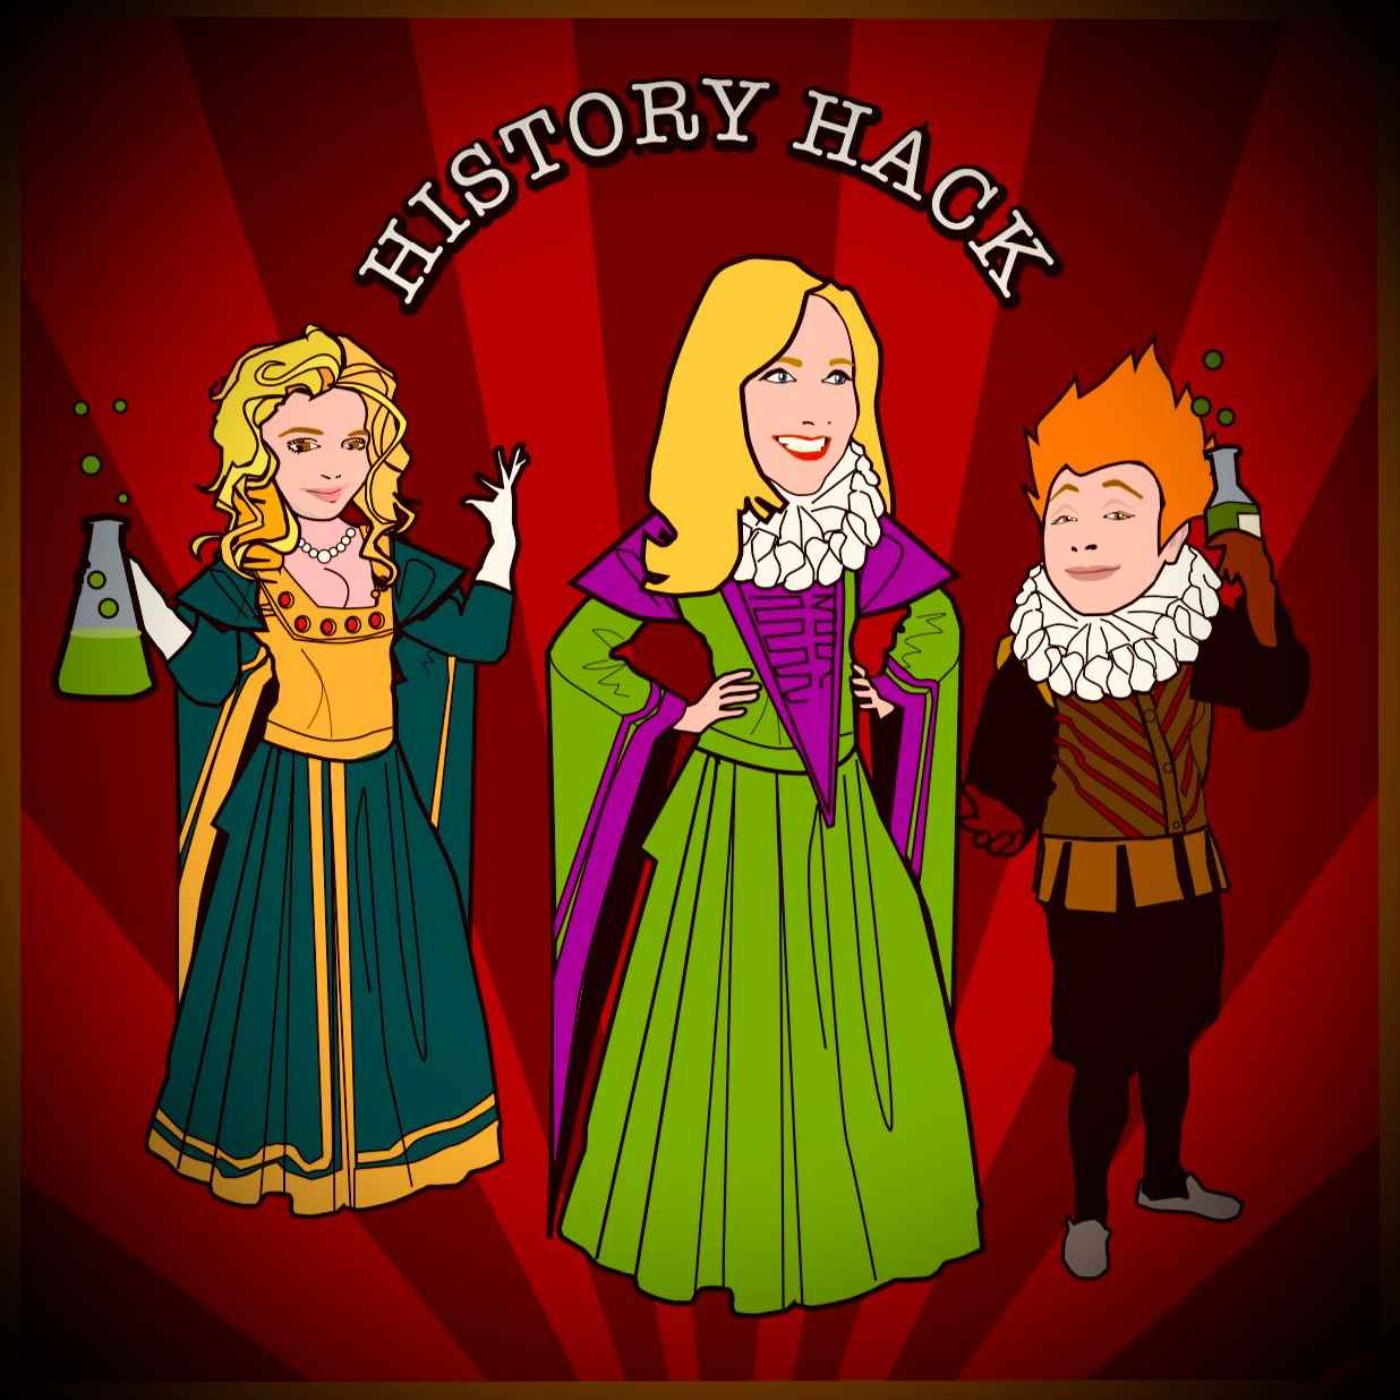 History Hack: 17th century female led poisoning ring